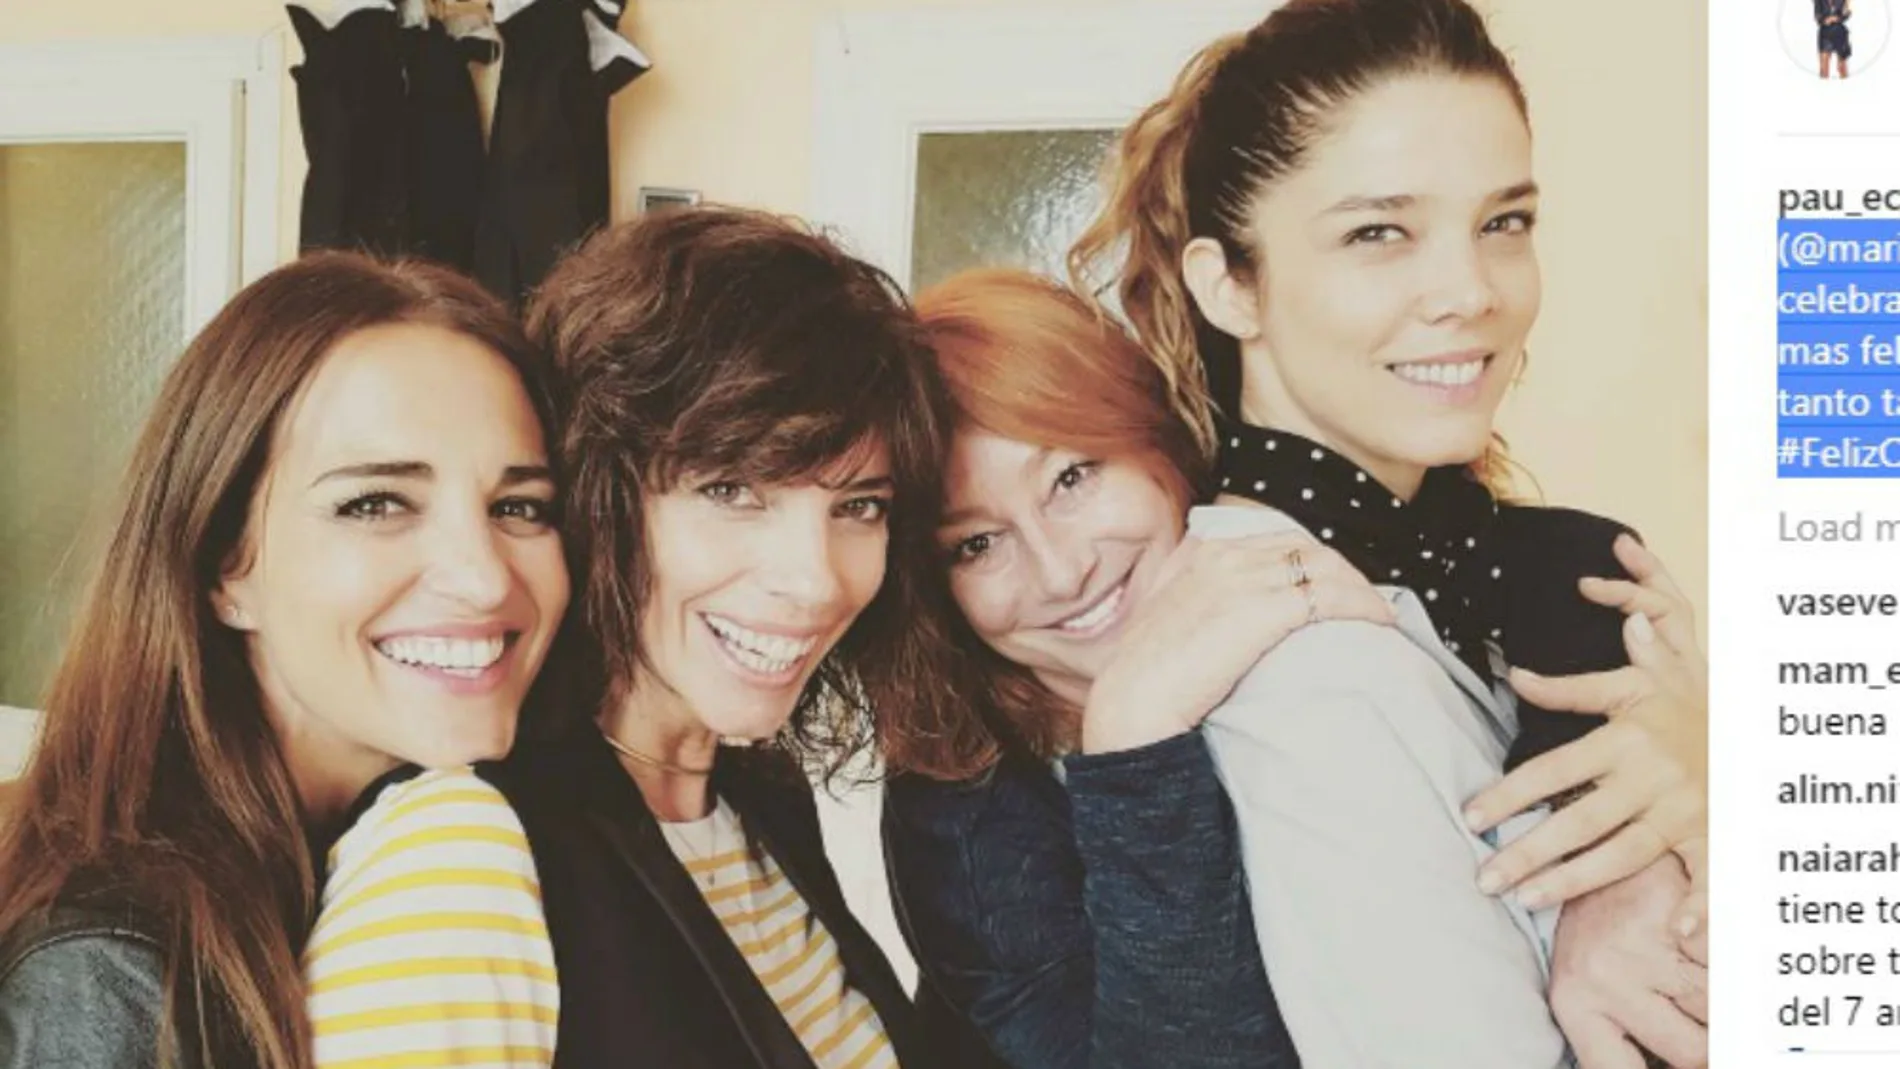 Paula Echevarría, Maribel Verdú, Gracia Querejeta y Juana Acosta en (c) Instagram